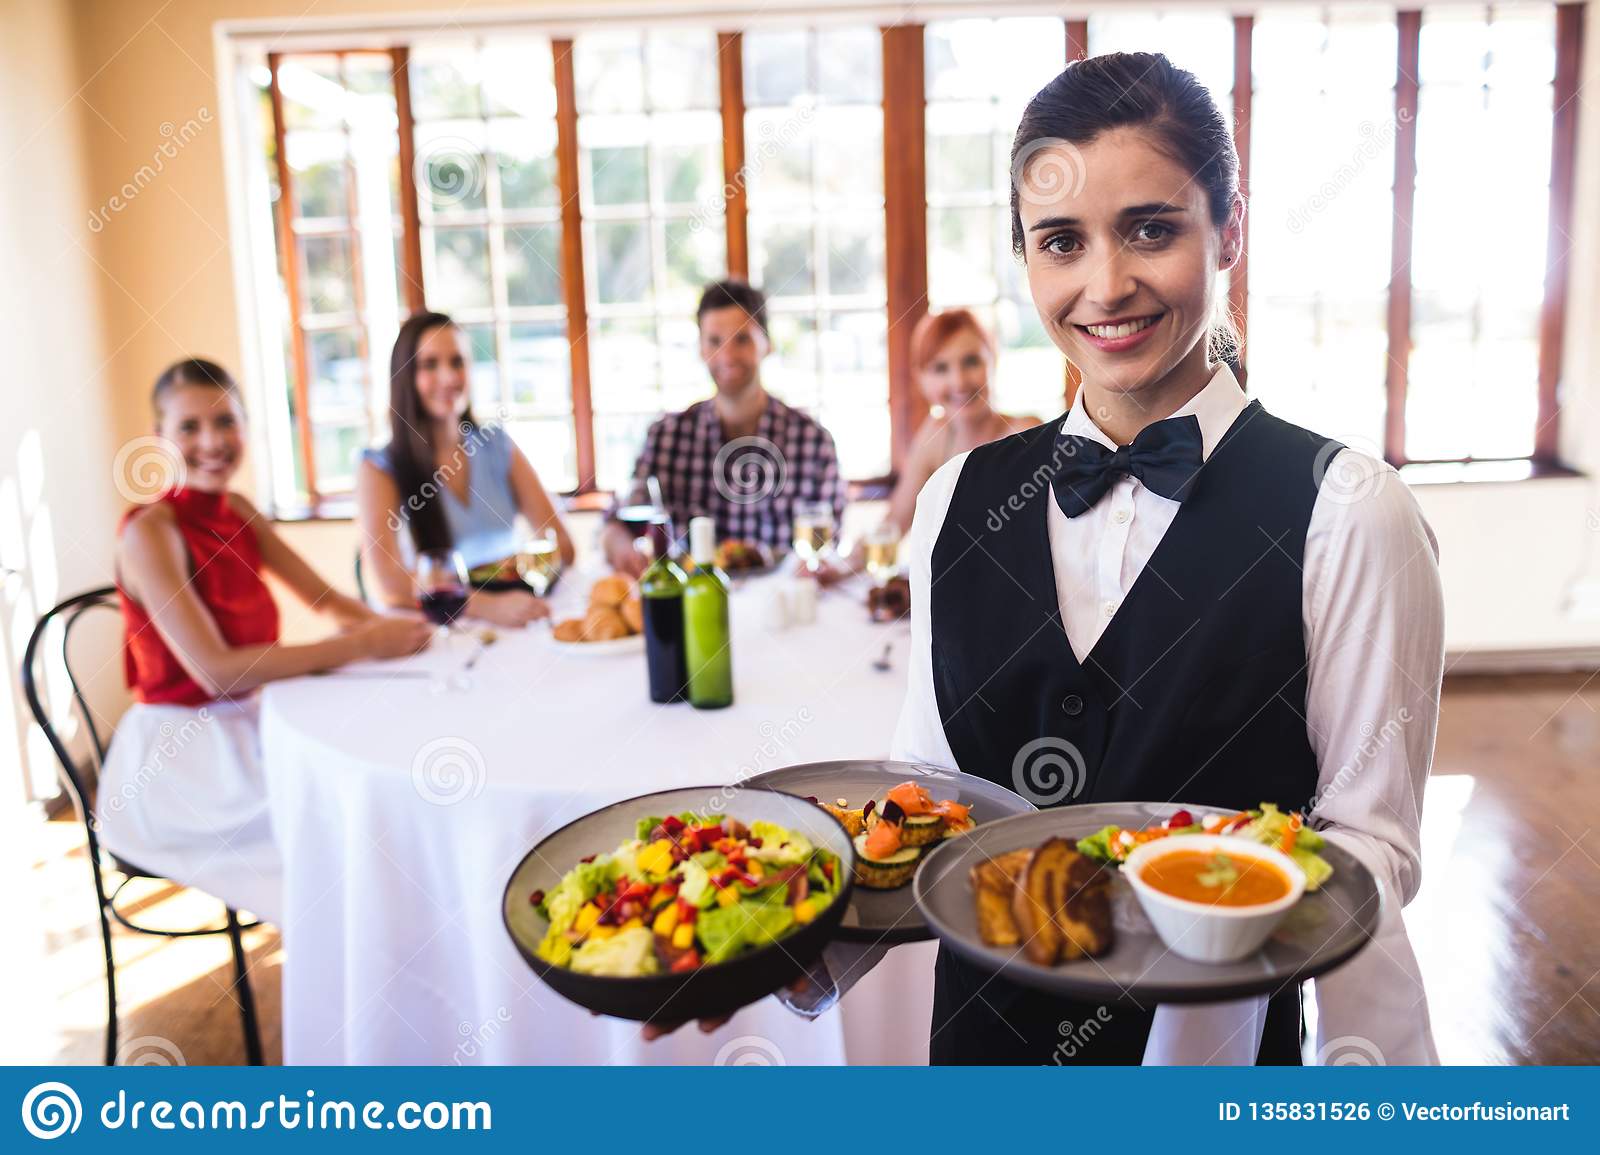 Pengertian Waitress, Fungsi dan Tanggung Jawab Waitress